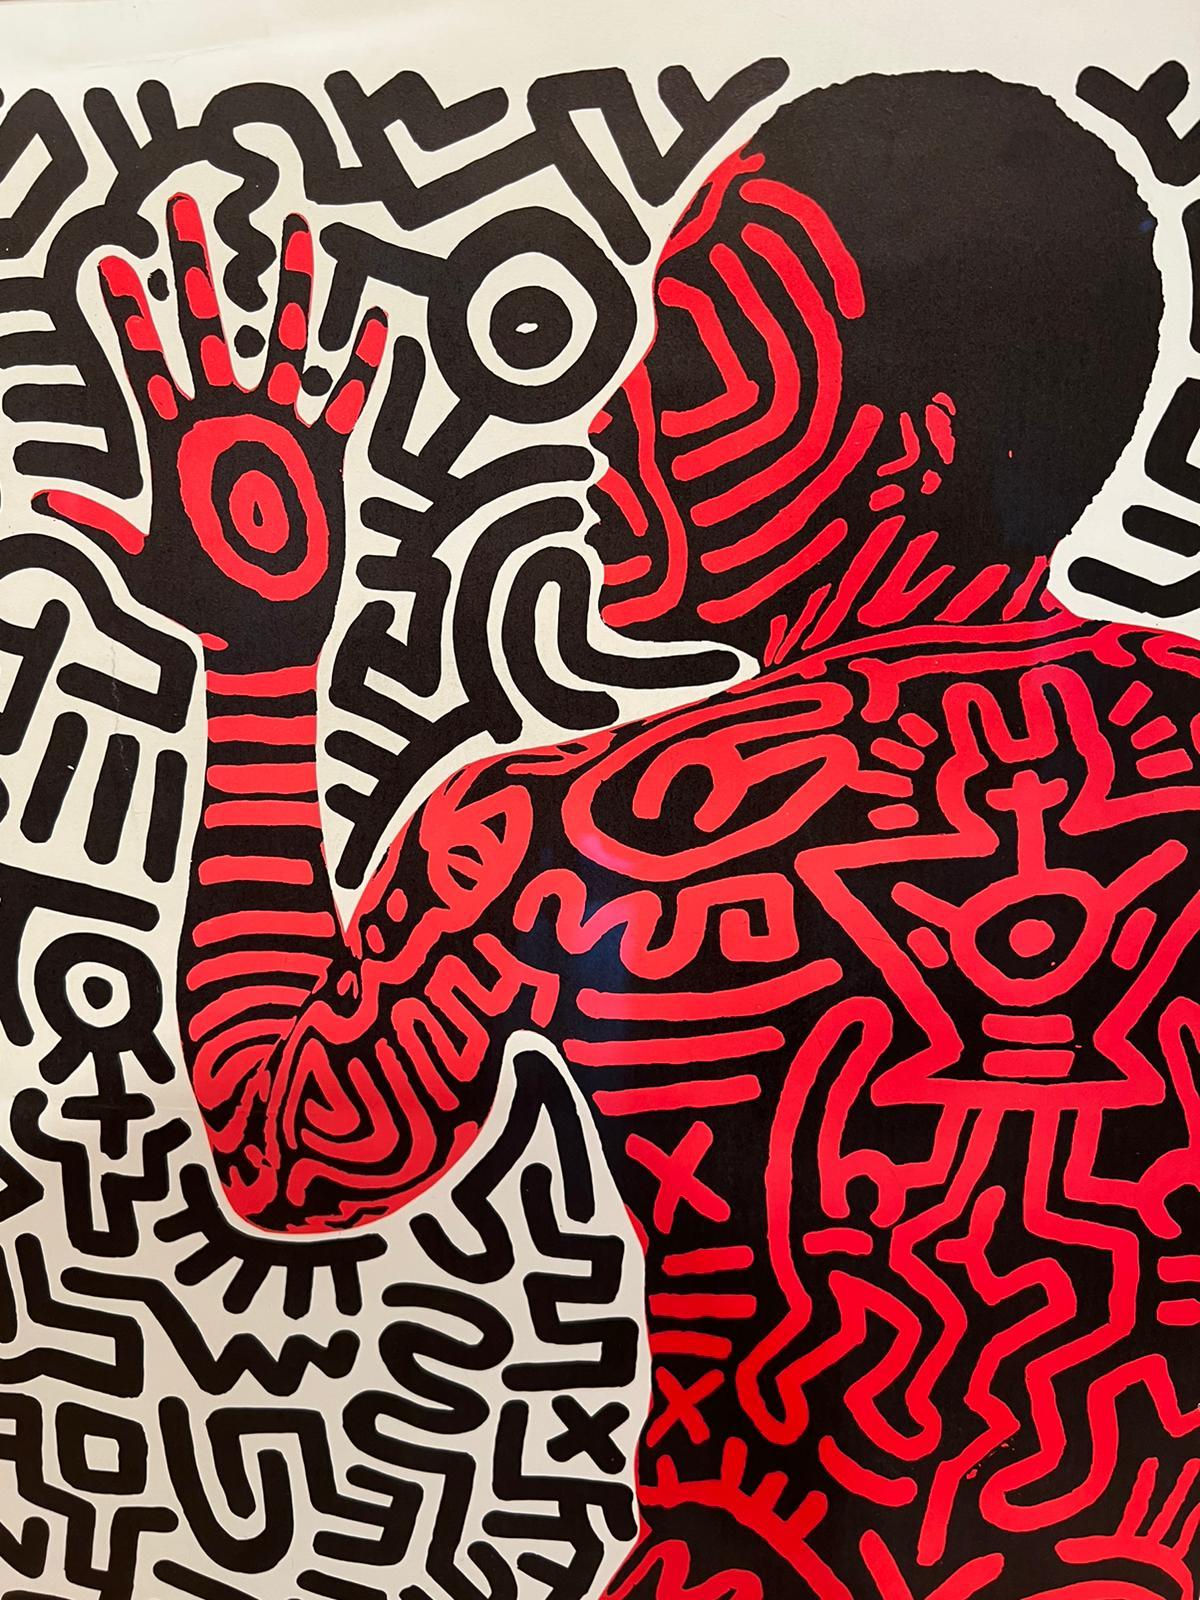 Into 84 - Impression de Keith Haring, signature rare 3